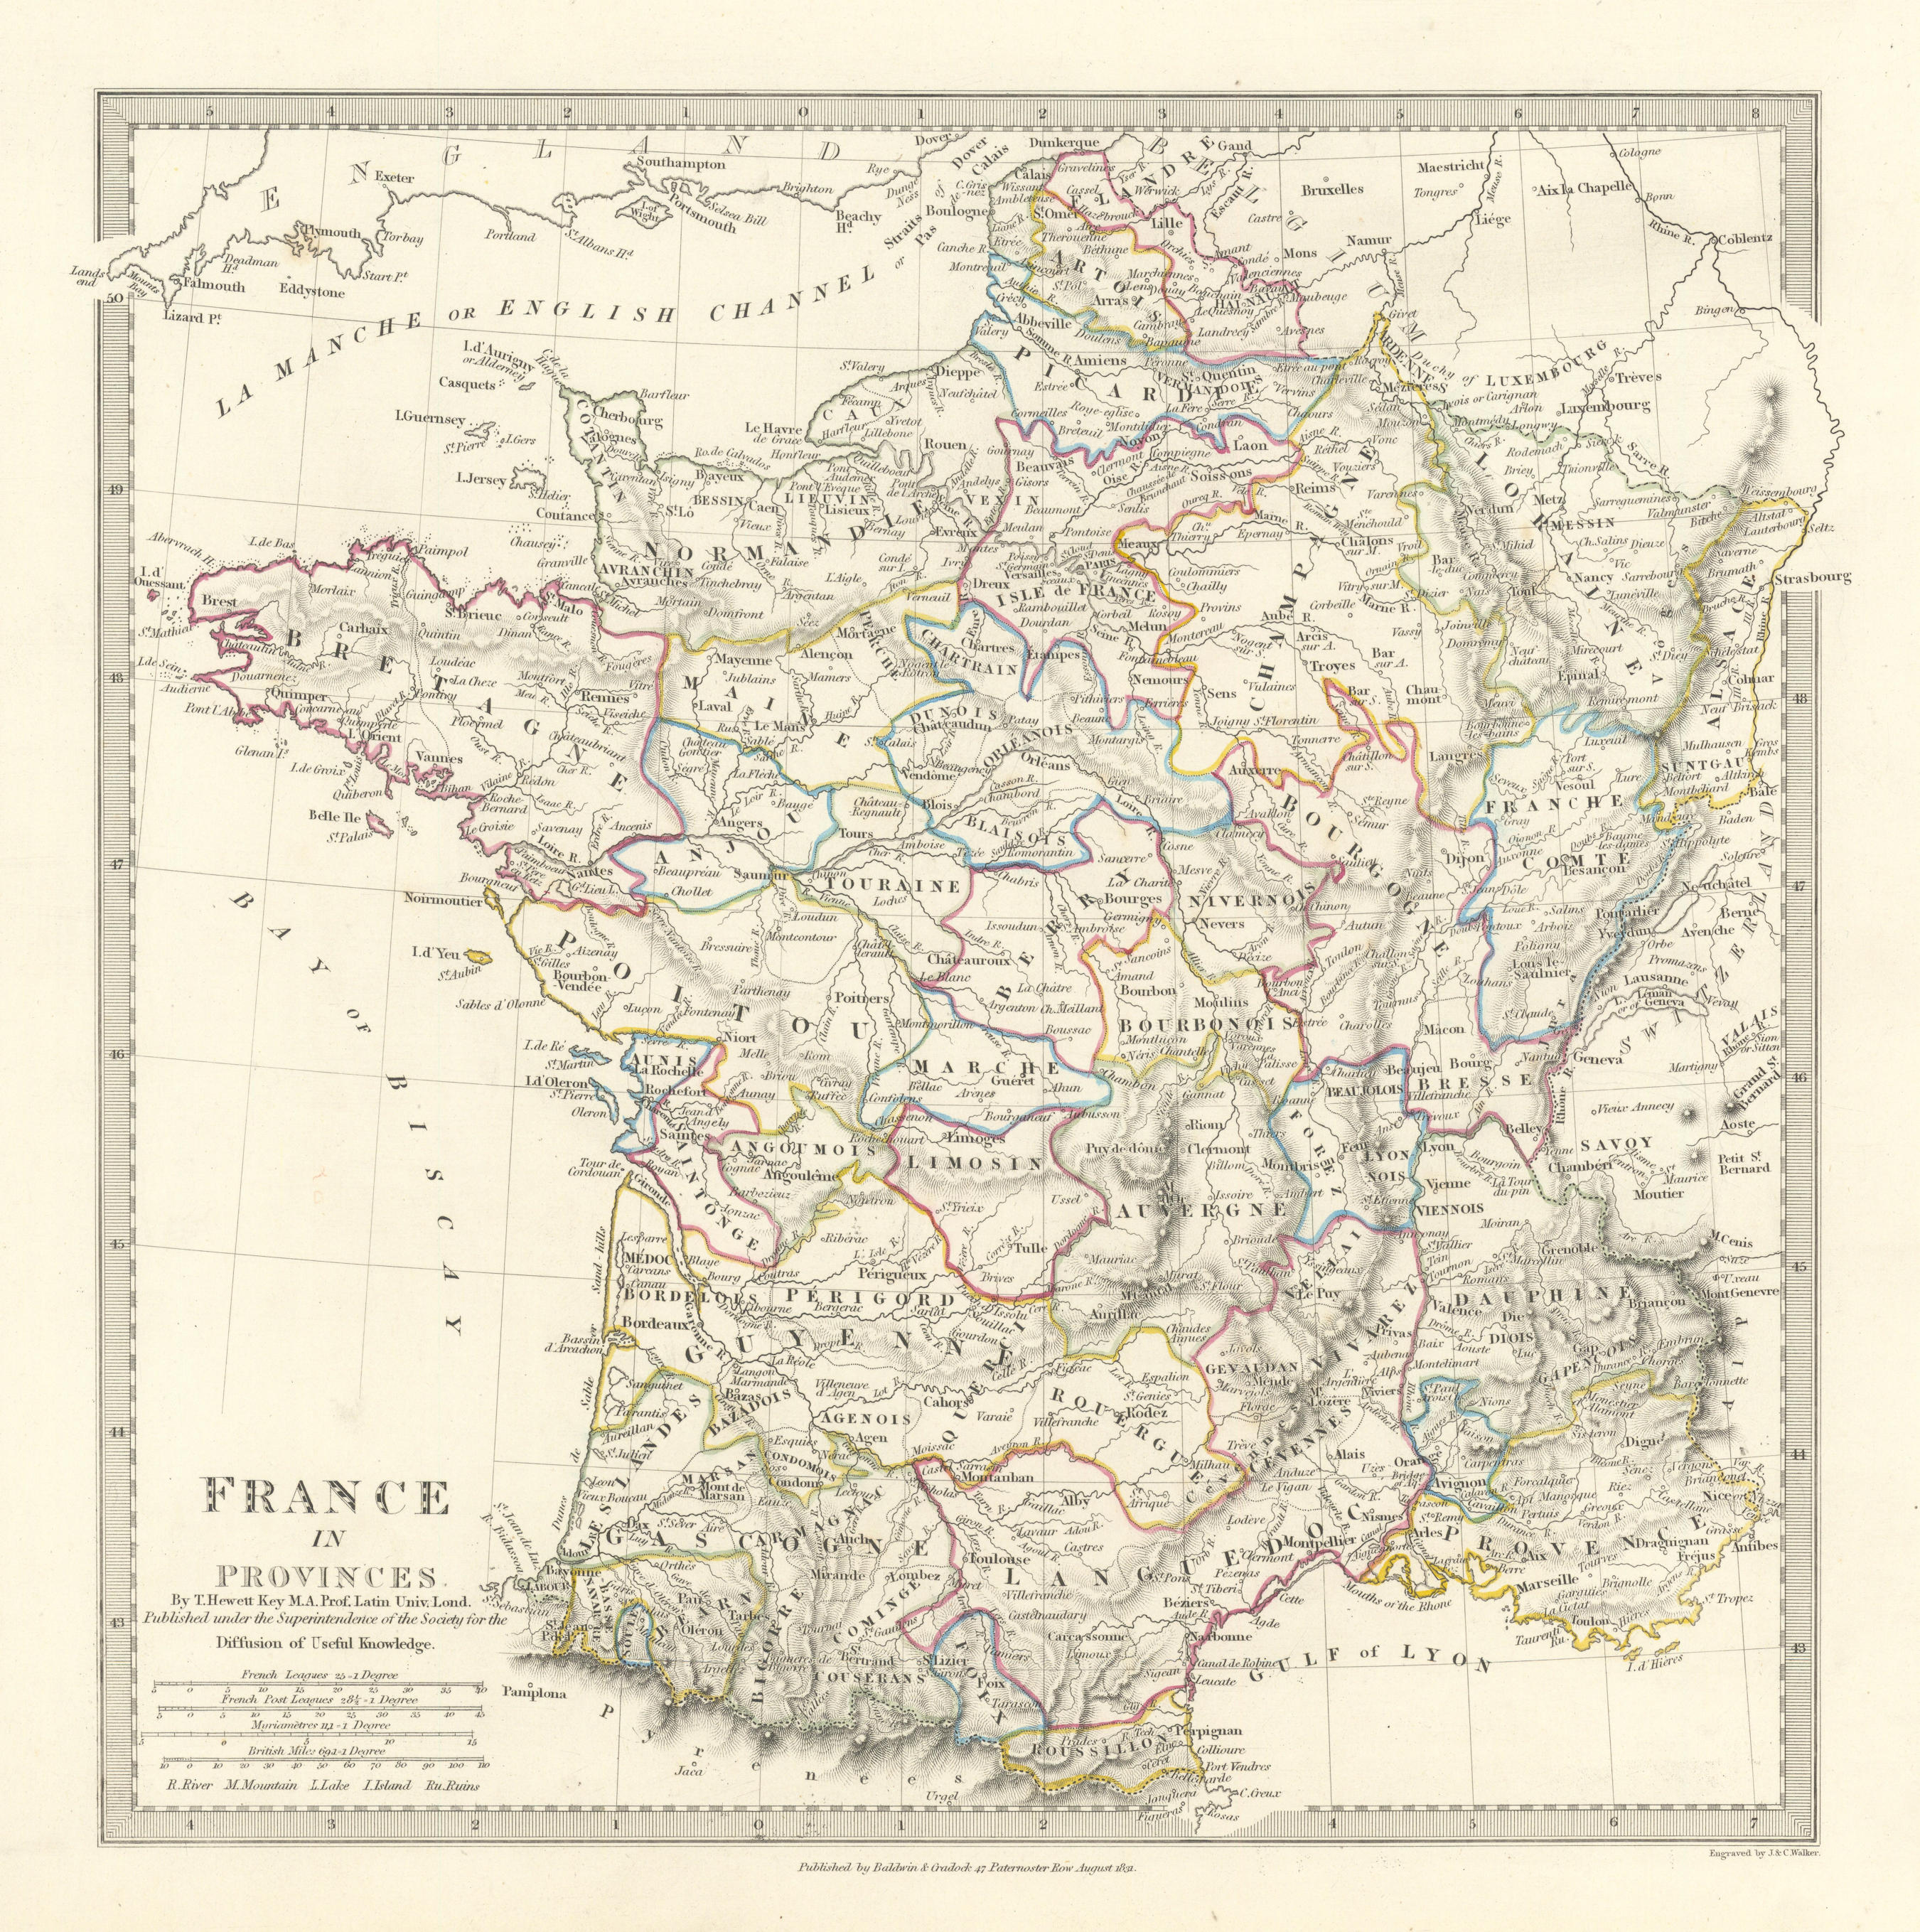 FRANCE IN PROVINCES. Shows provinces <1790. Original hand colour.SDUK 1844 map